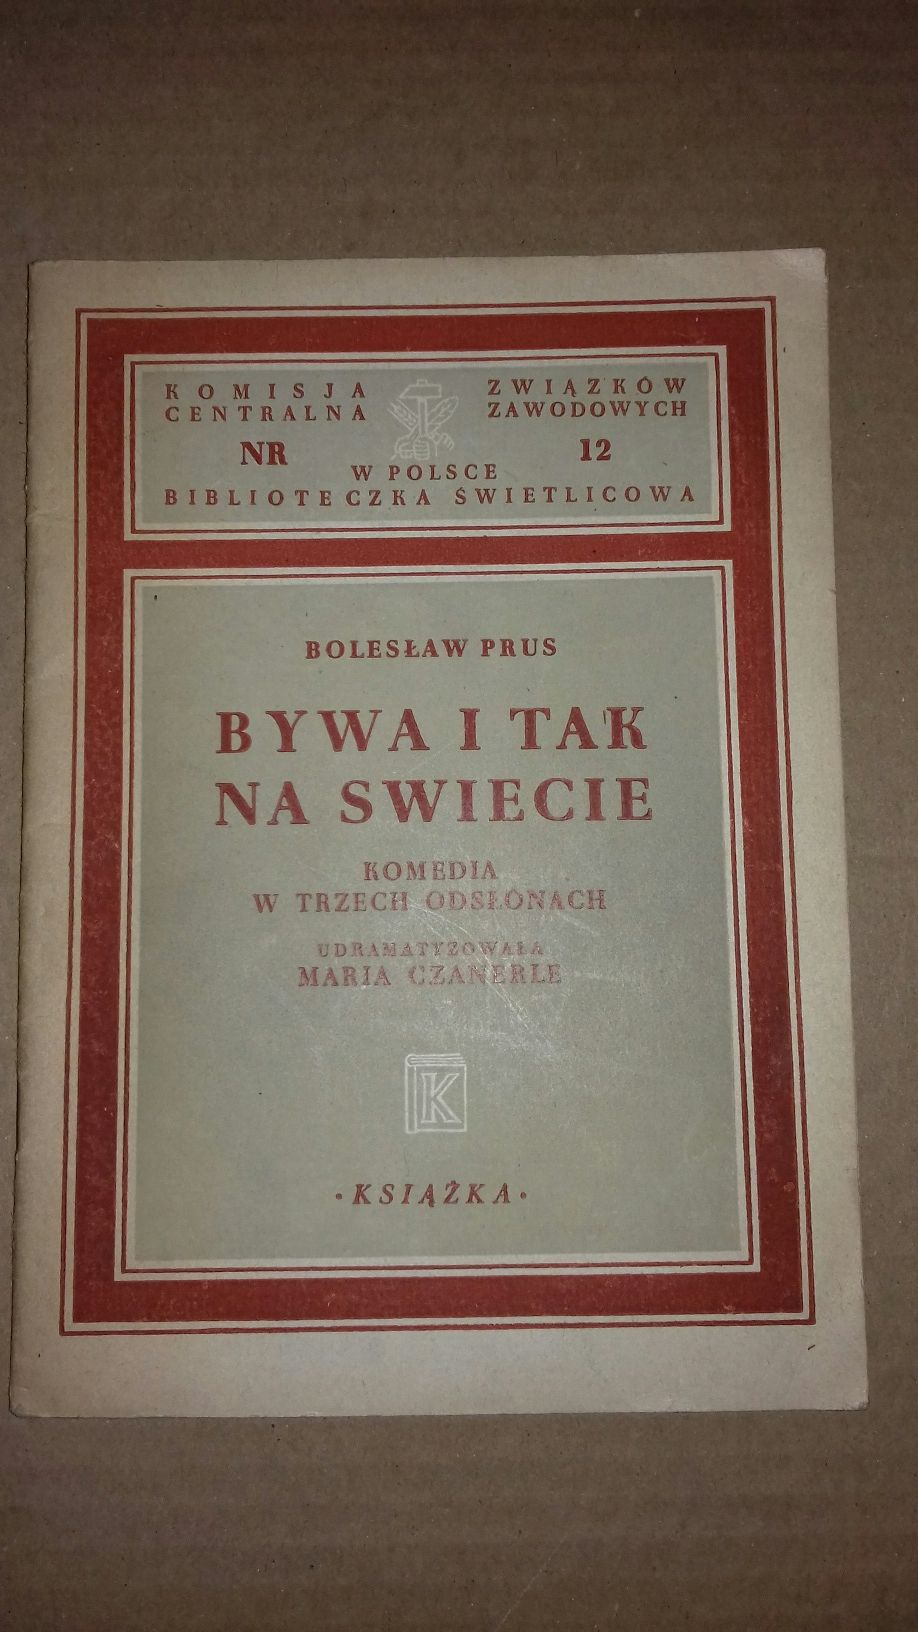 Bywa i tak na tym świecie - Bolesław prus 1948r